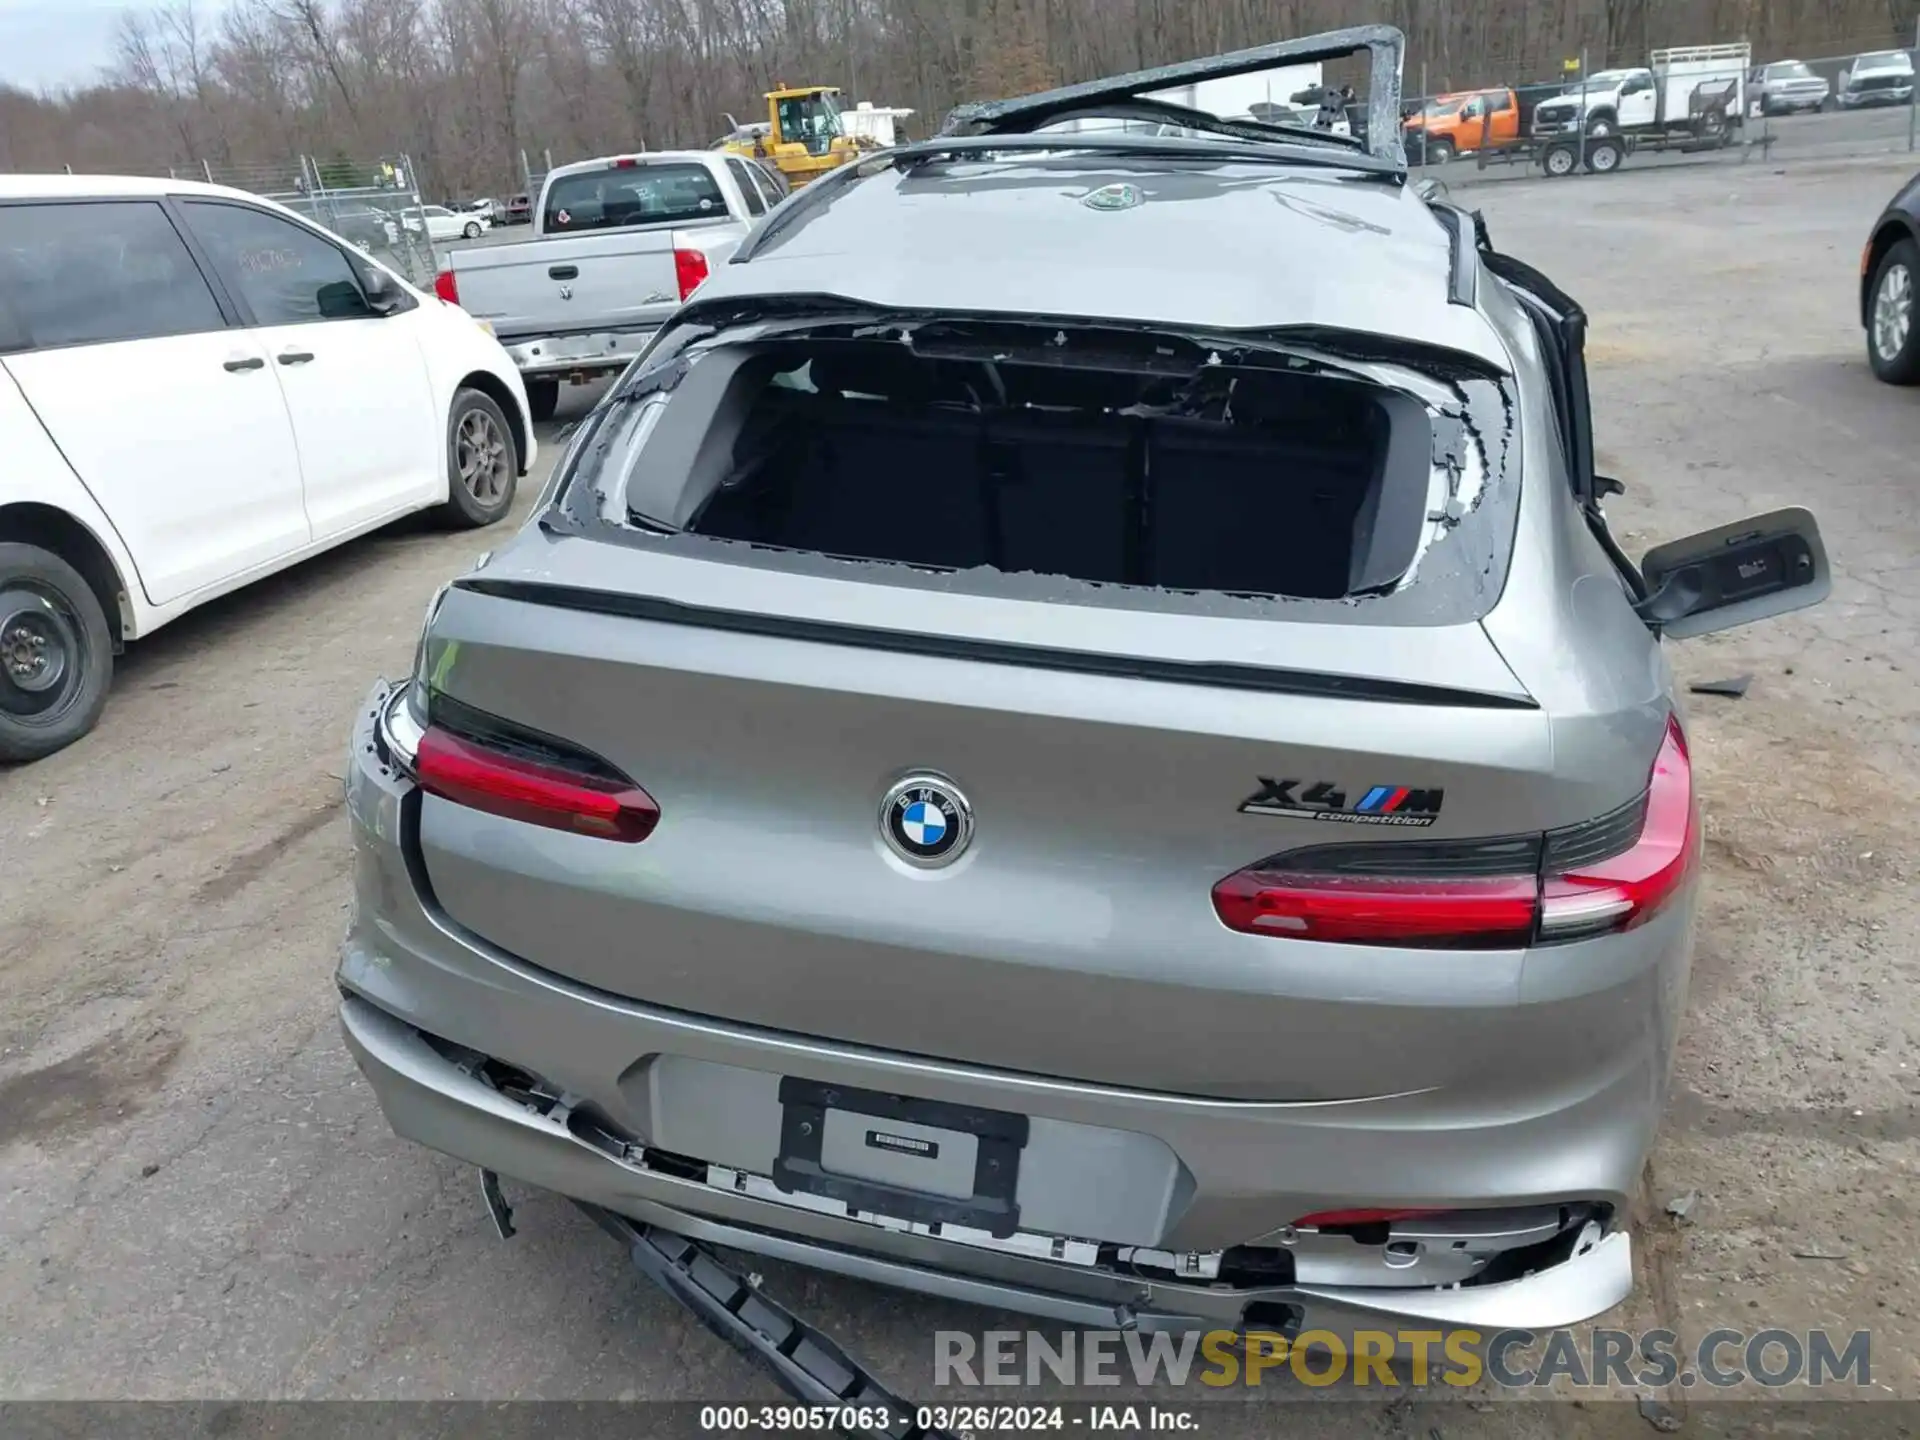 16 Photograph of a damaged car 5YMUJ0C02LLU67361 BMW X4 M 2020